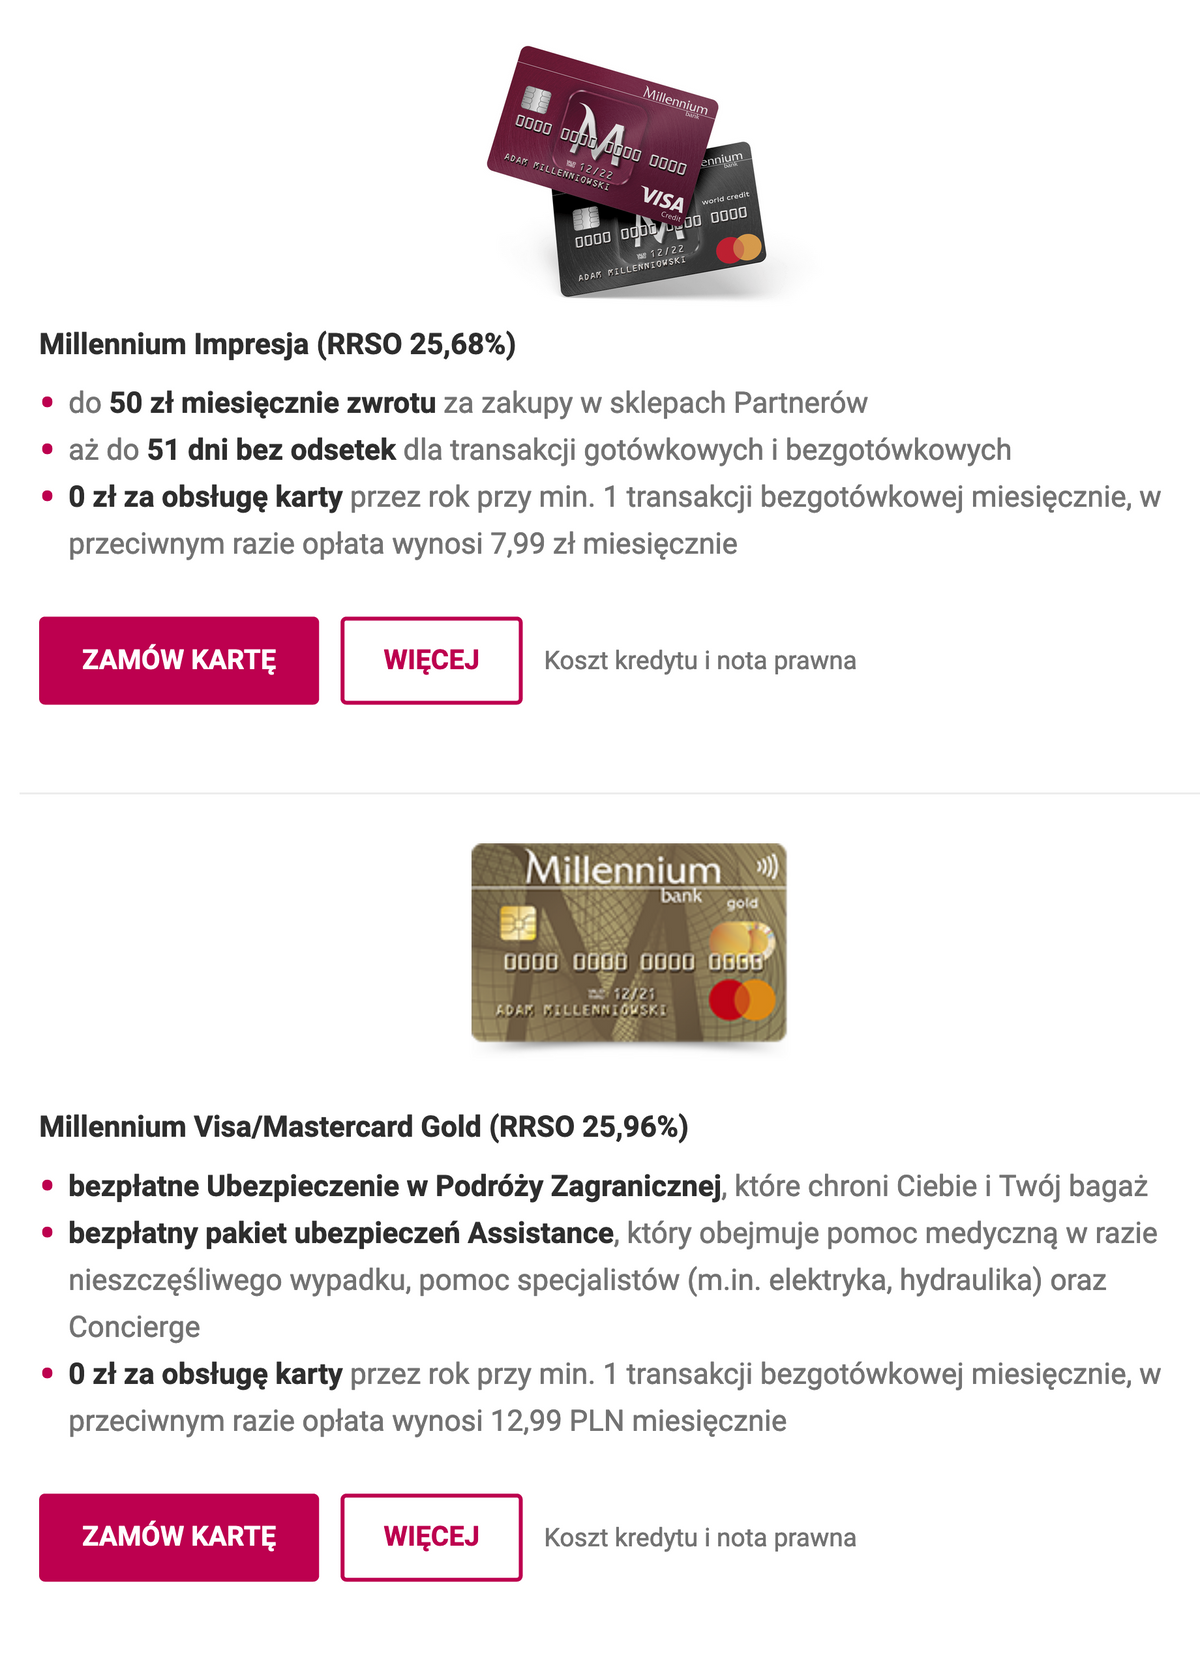 Виды кредитных карт в банке «Миллениум». Источник: bankmillennium.pl